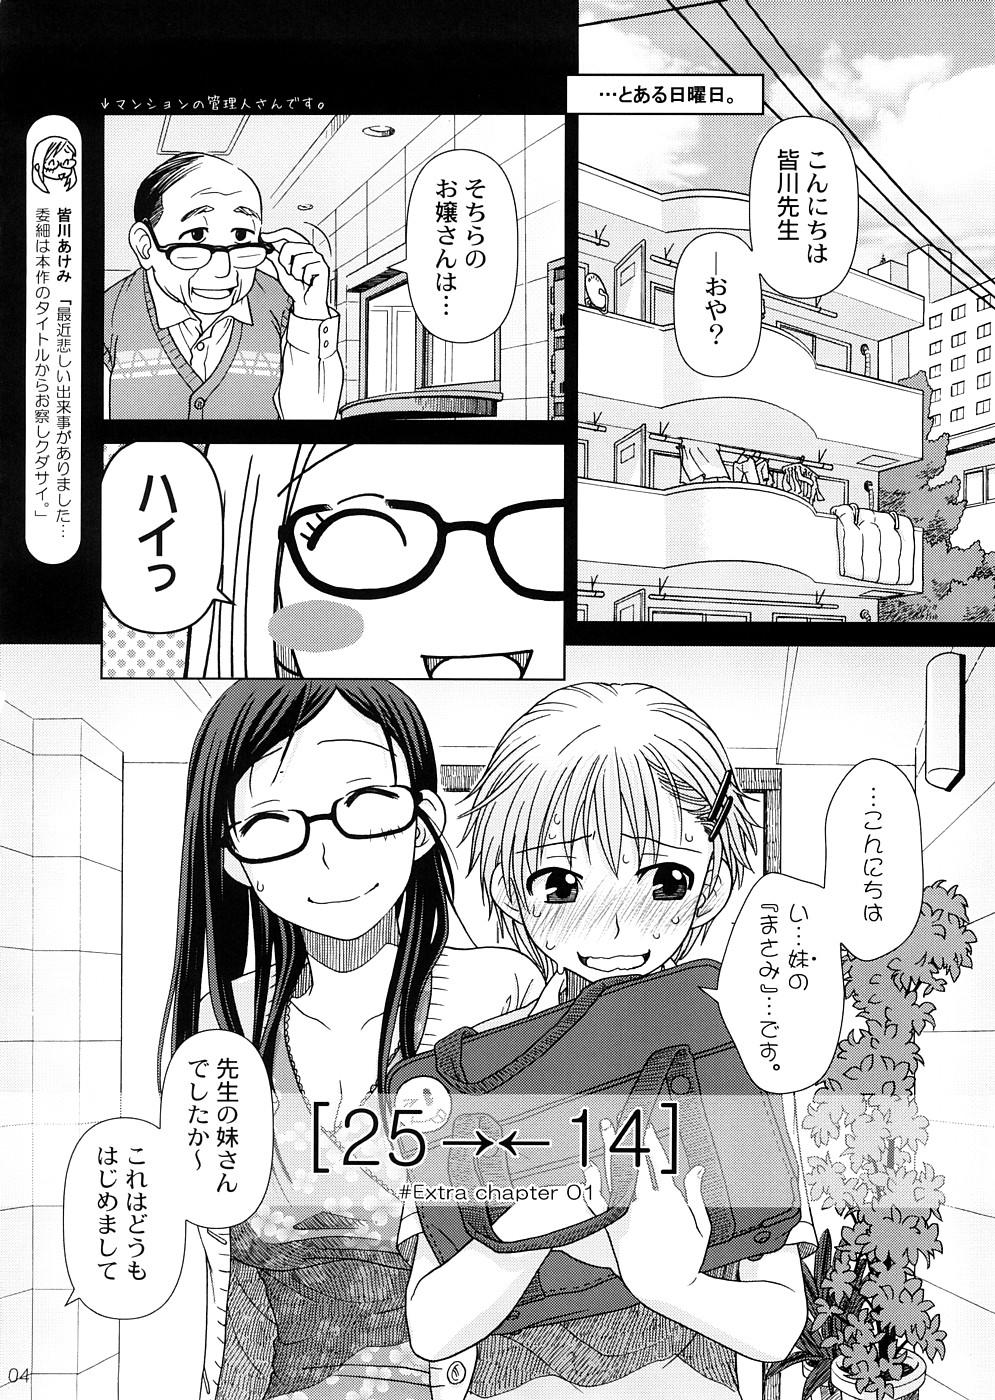 (COMIC1☆2) [Otaku Beam (Ootsuka Mahiro)] 2514 [24→←14] #Extra chapter 2